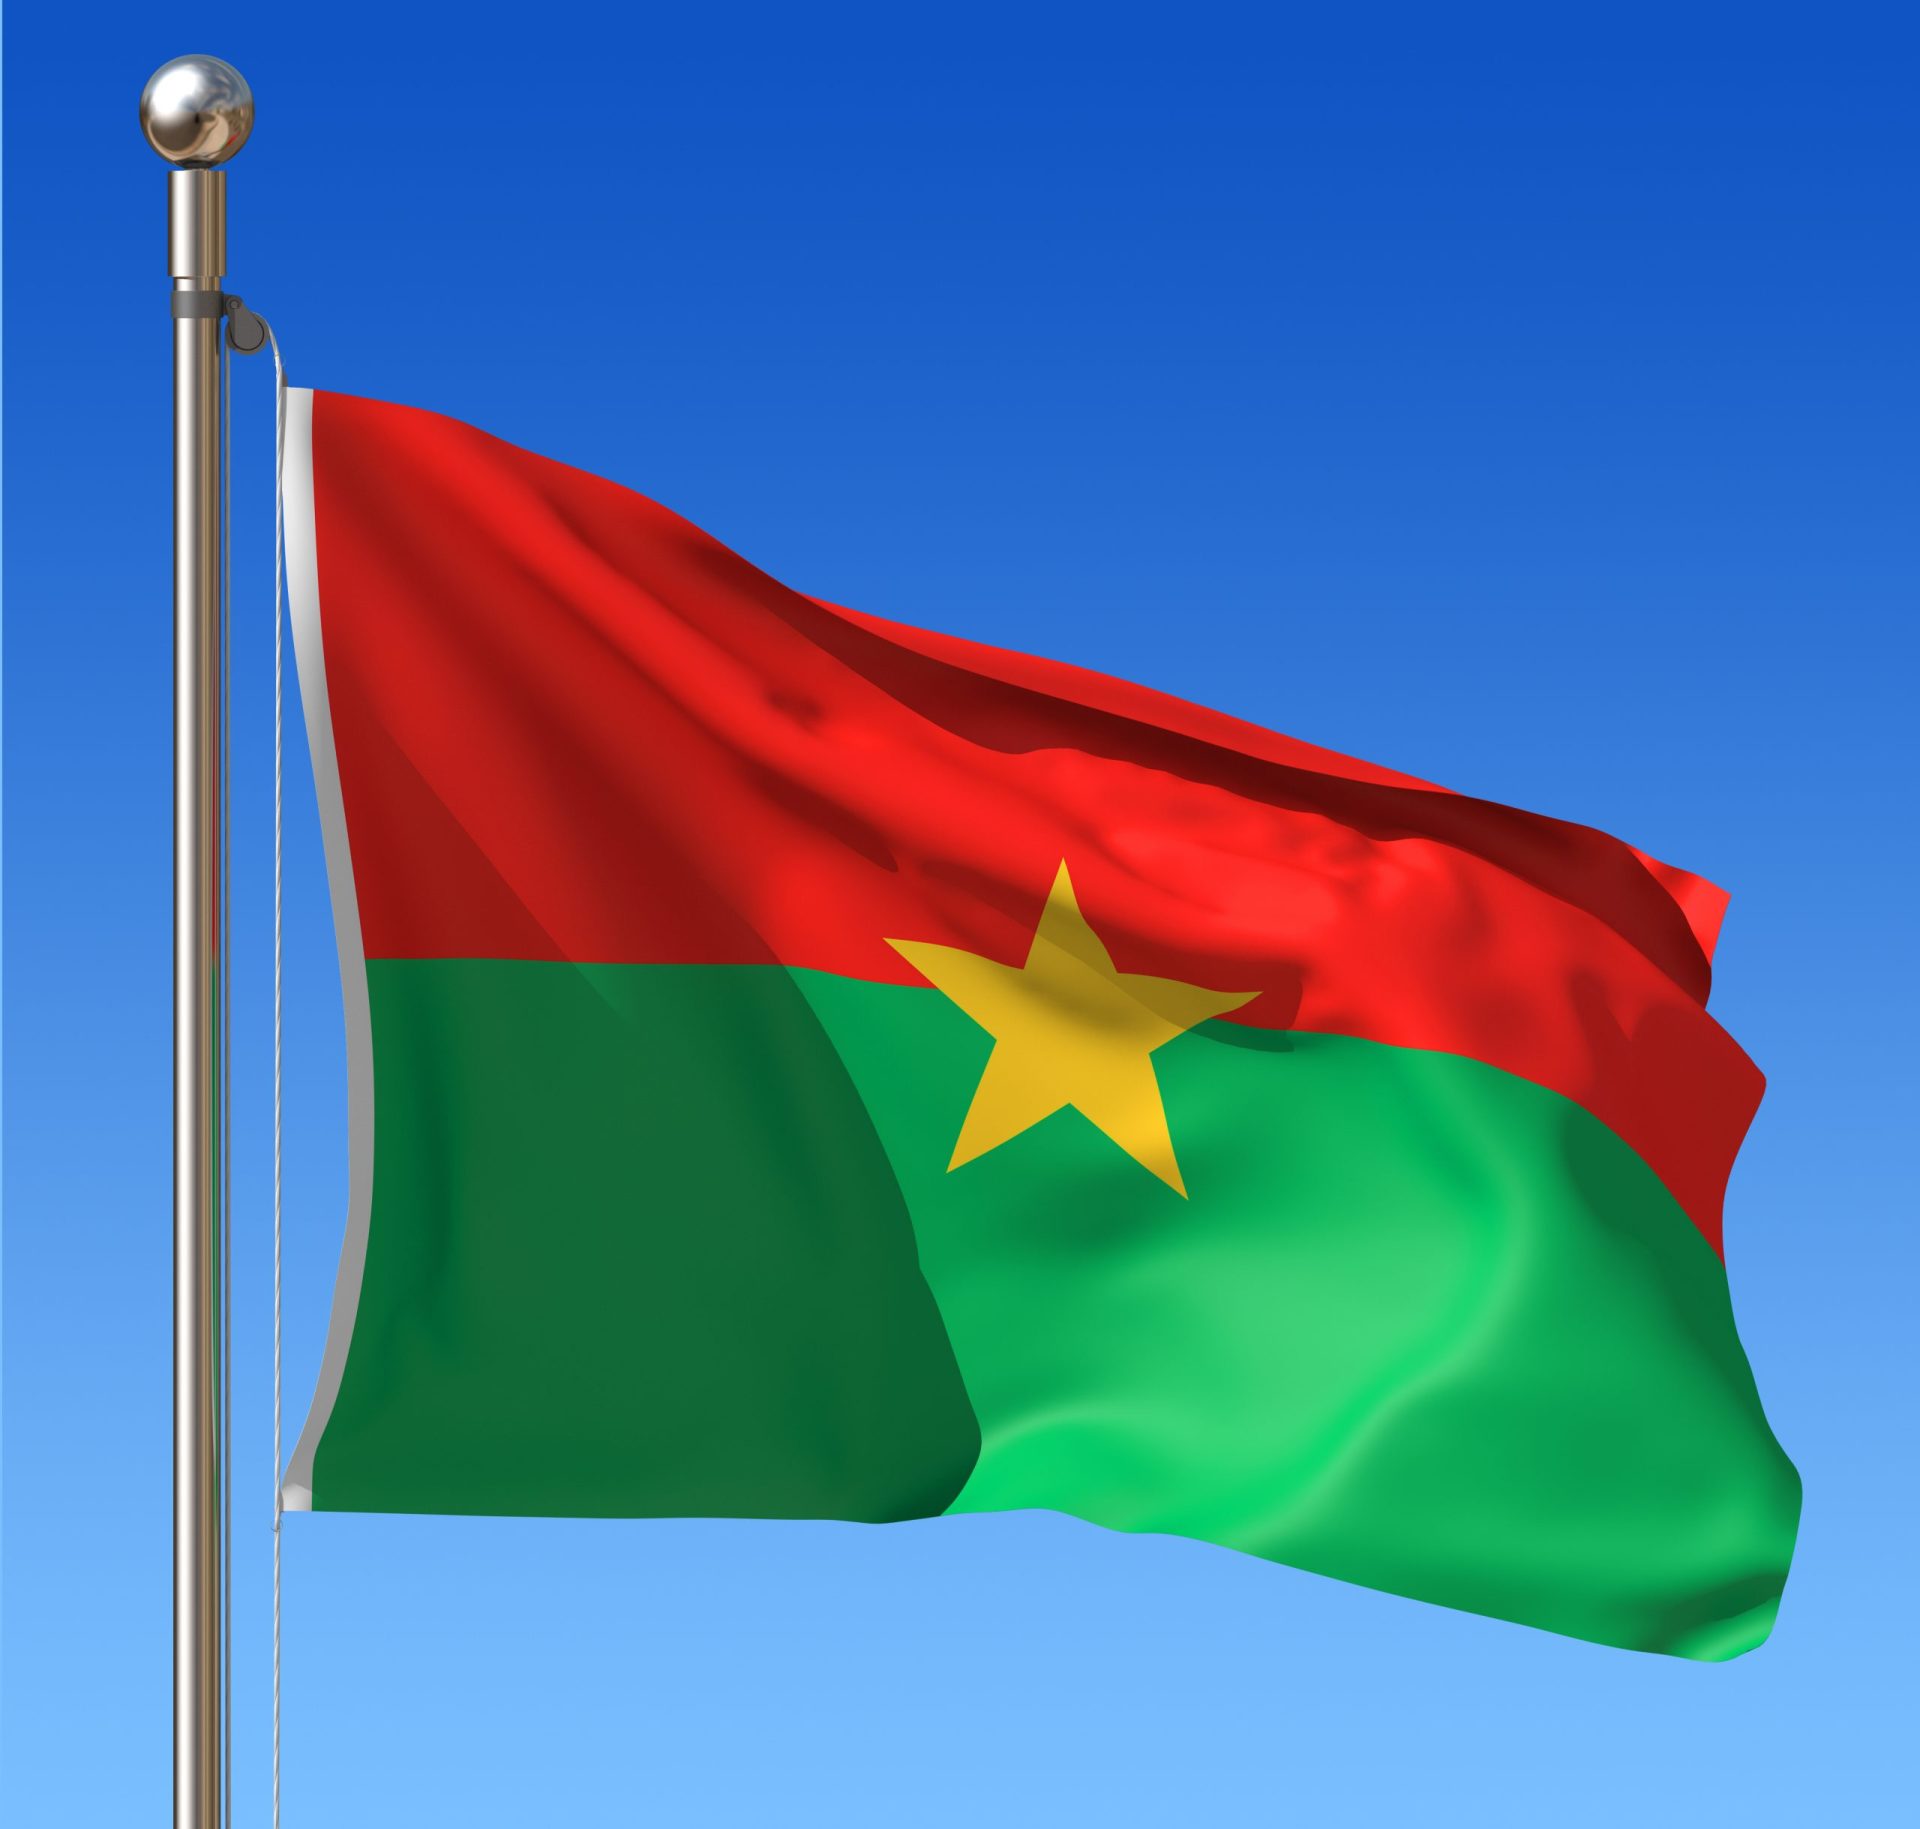 Manifestantes ateiam fogo ao Parlamento do Burkina Faso